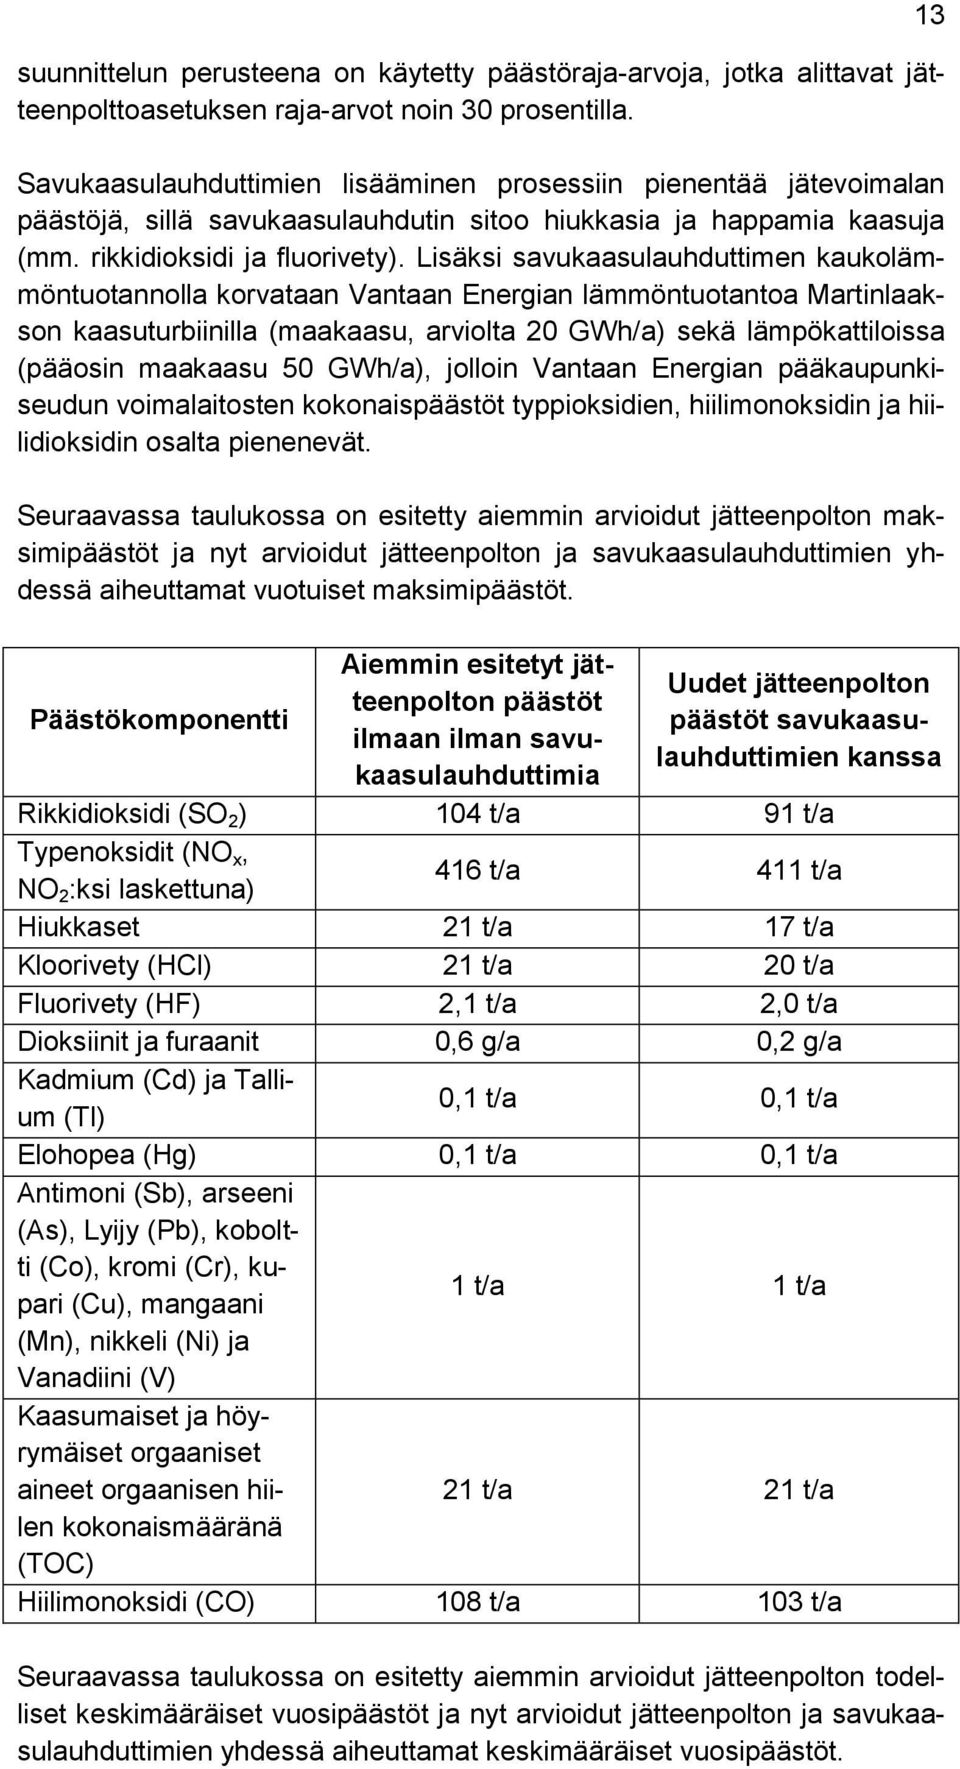 Lisäksi savukaasulauhduttimen kaukolämmöntuotannolla korvataan Vantaan Energian lämmöntuotantoa Martinlaakson kaasuturbiinilla (maakaasu, arviolta 20 GWh/a) sekä lämpökattiloissa (pääosin maakaasu 50